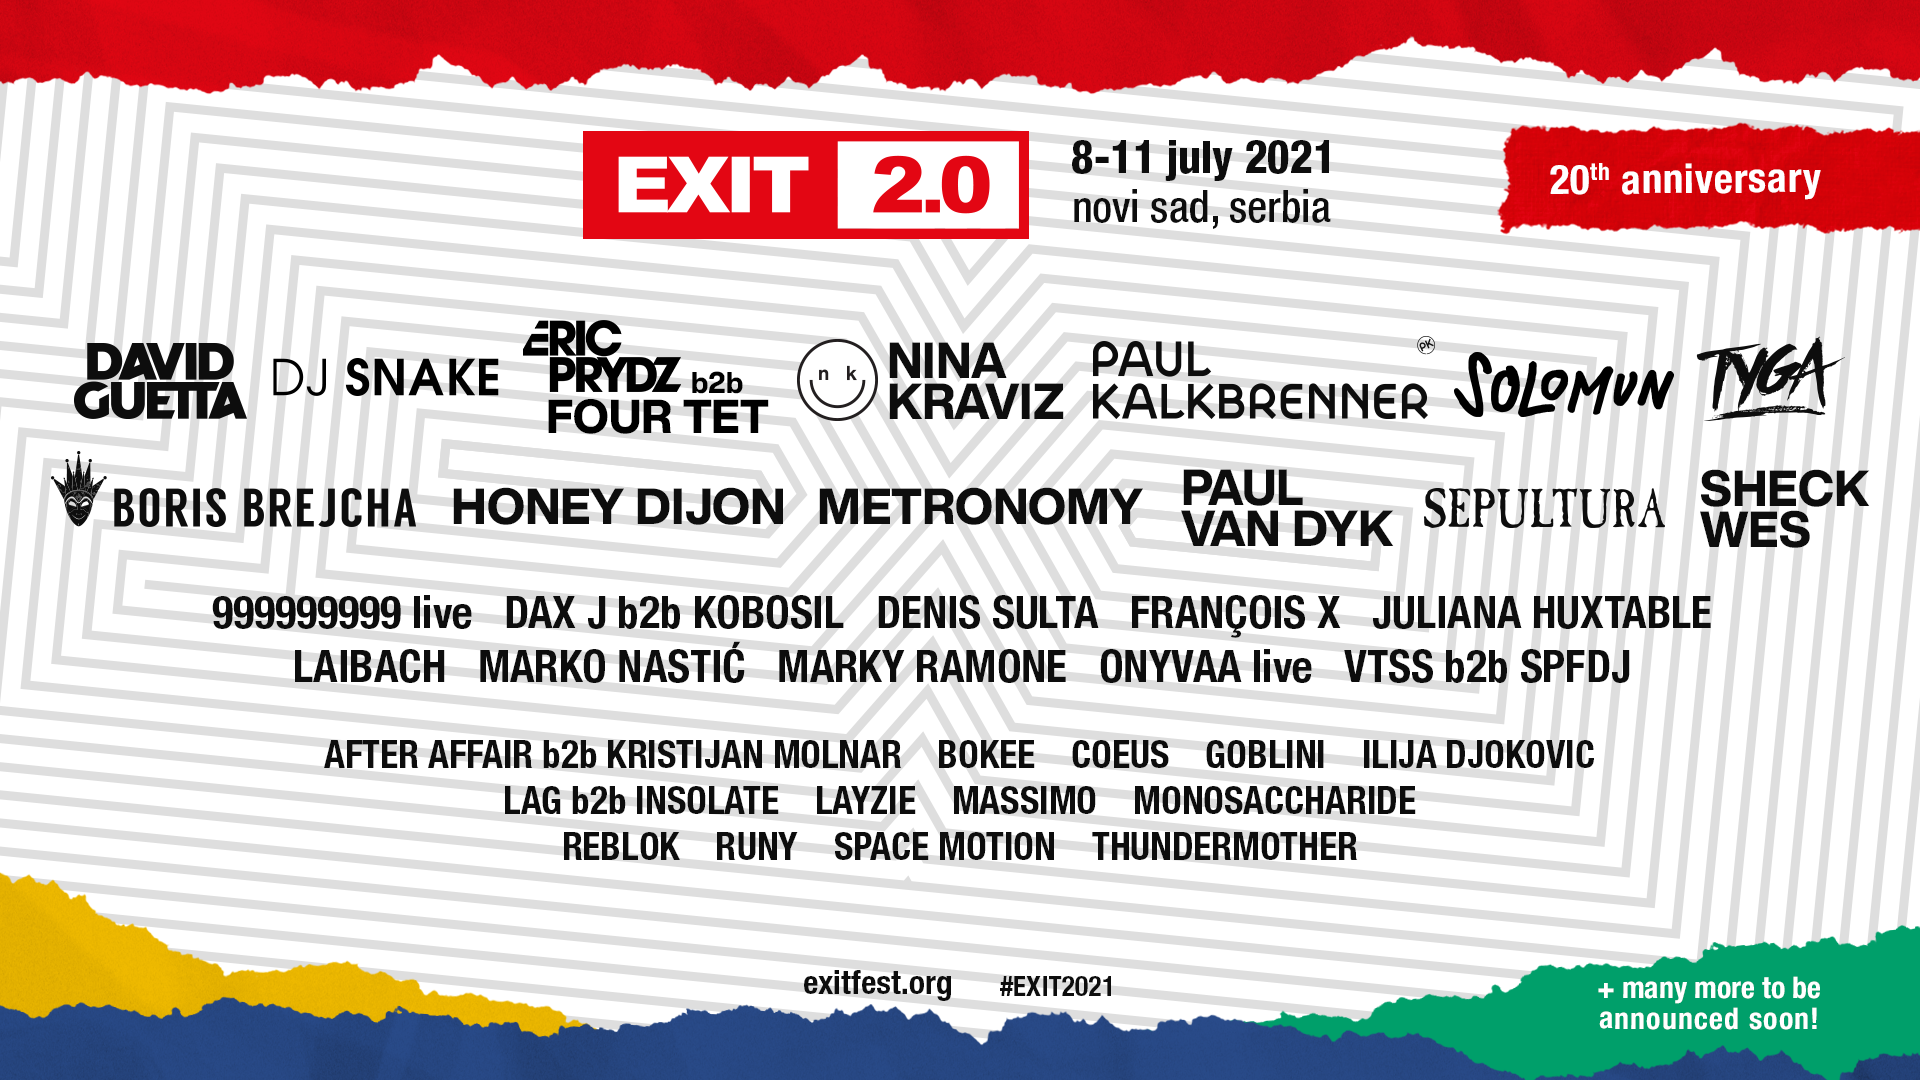 Nova imena pojačavaju veliku proslavu 20. godišnjice EXIT festivala